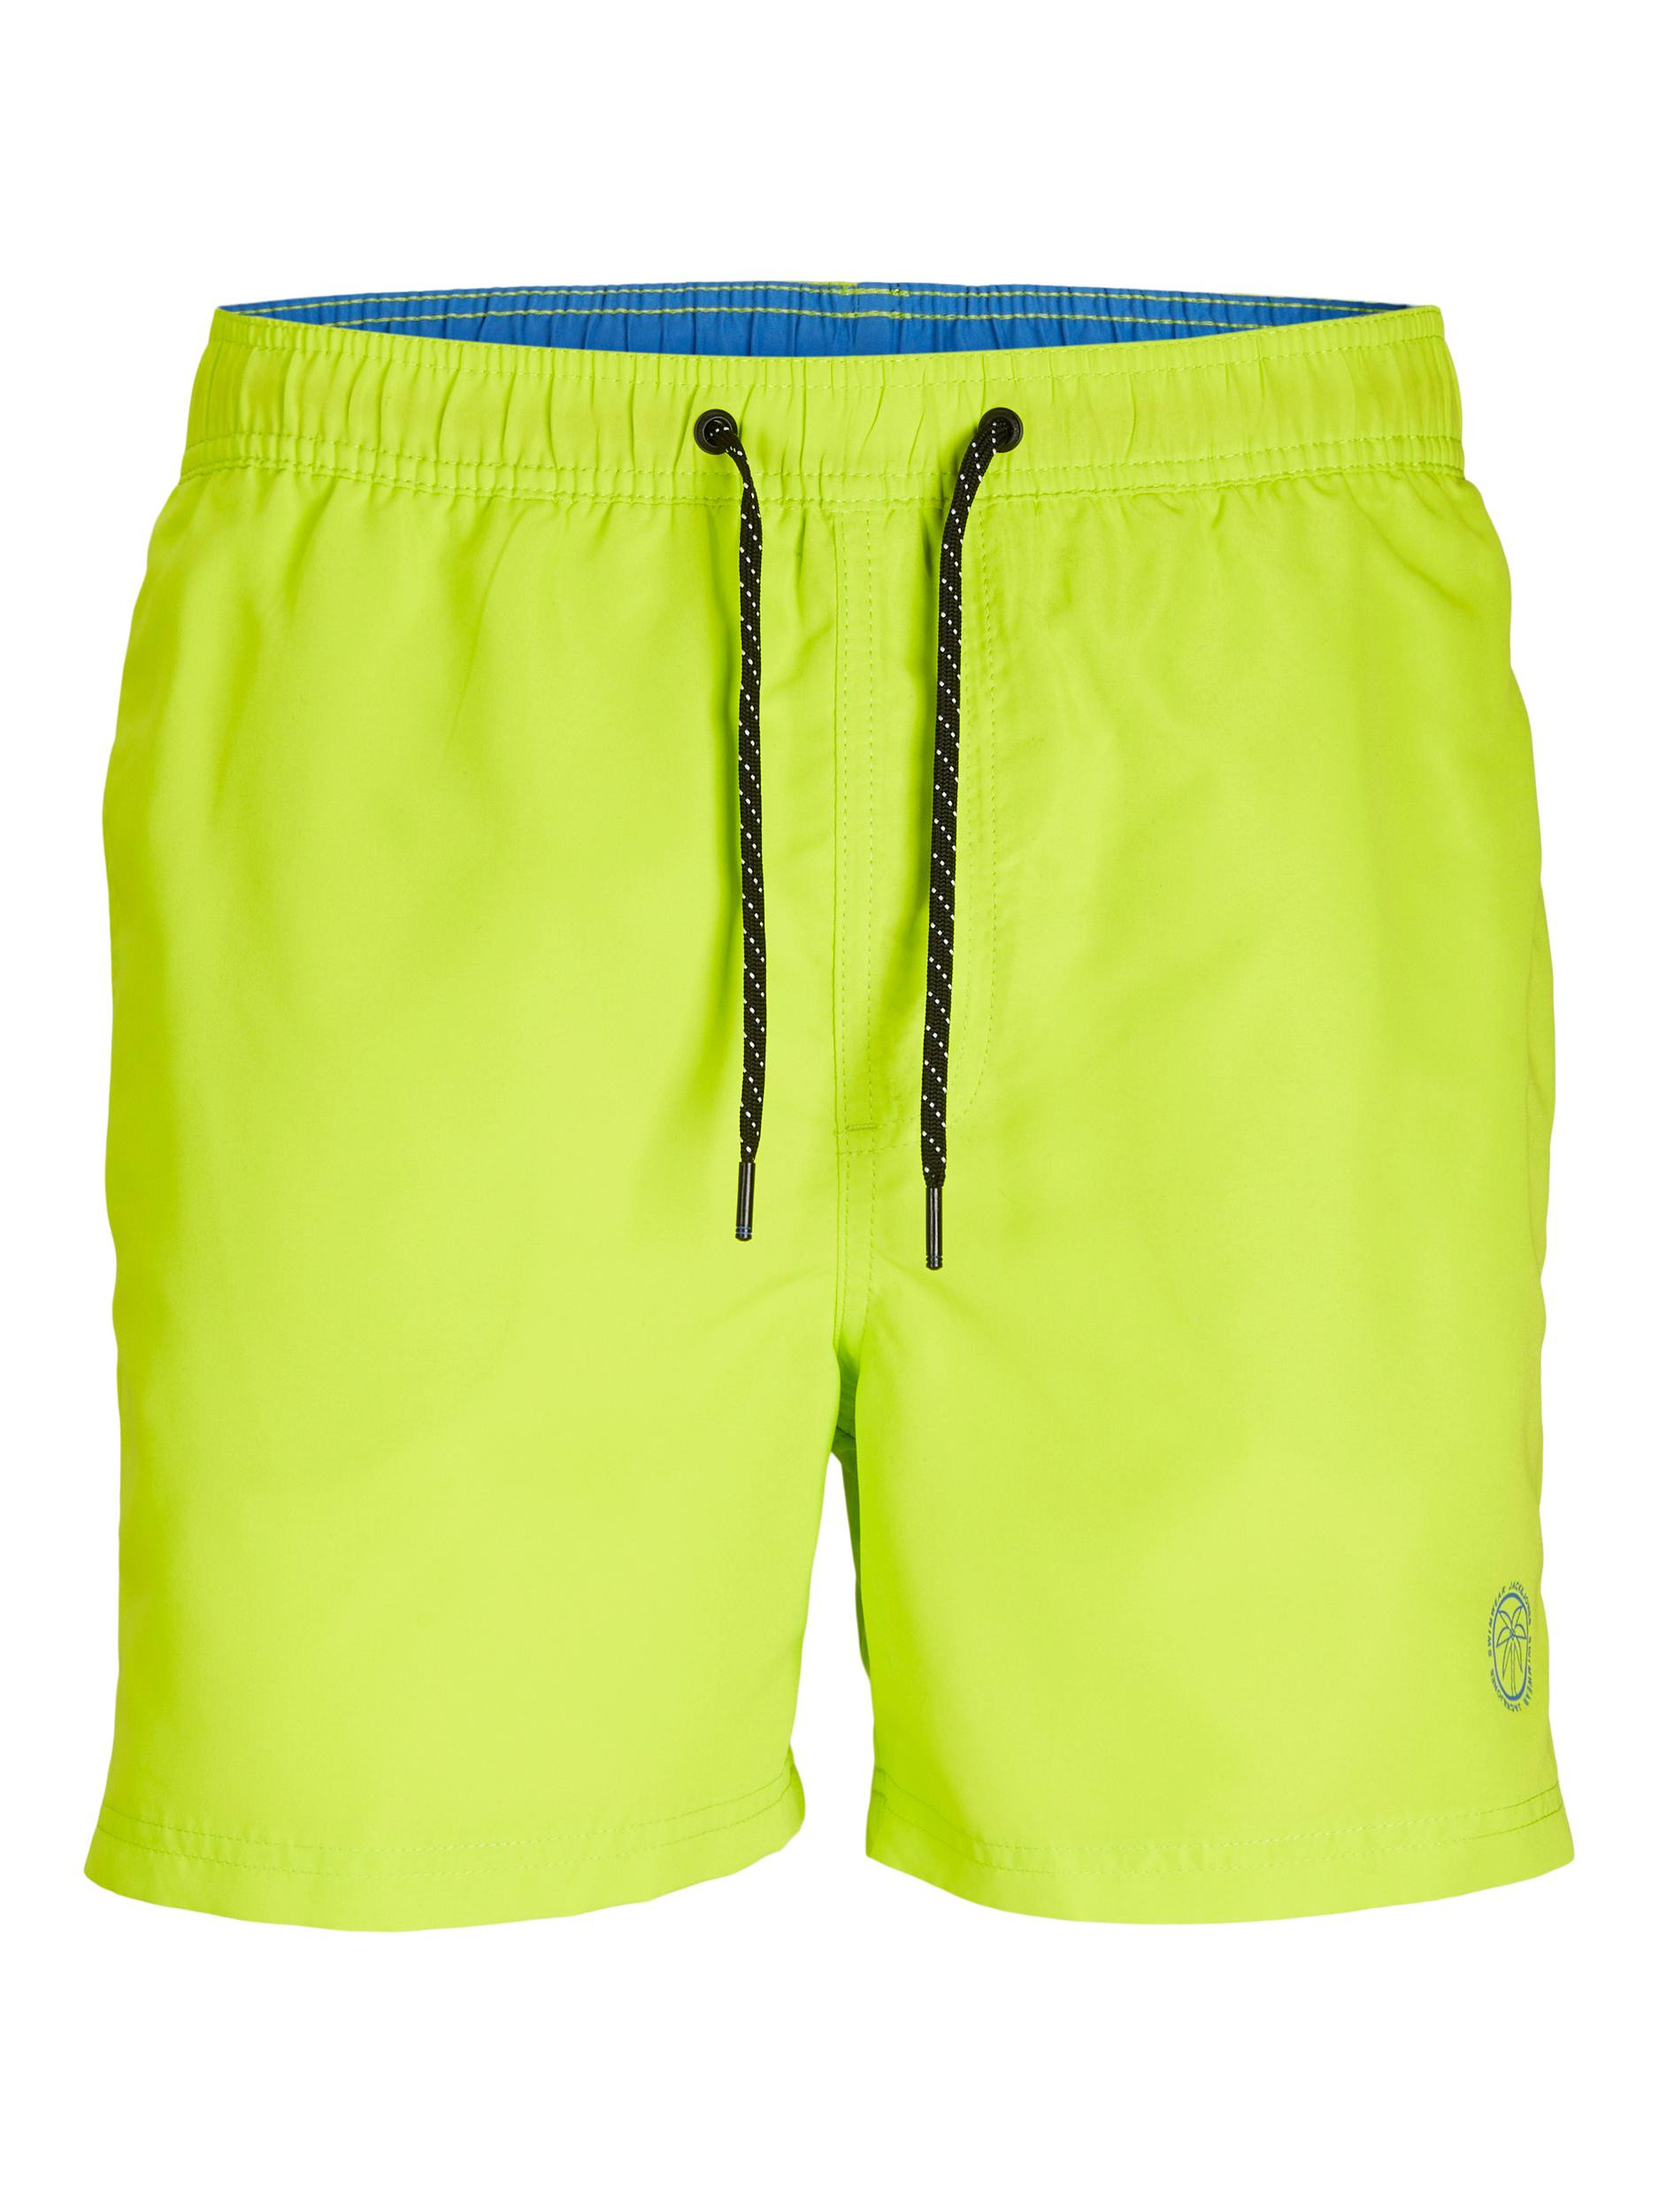 Jack & Jones - Regular fit swim trunks, Lime Green, large image number 0